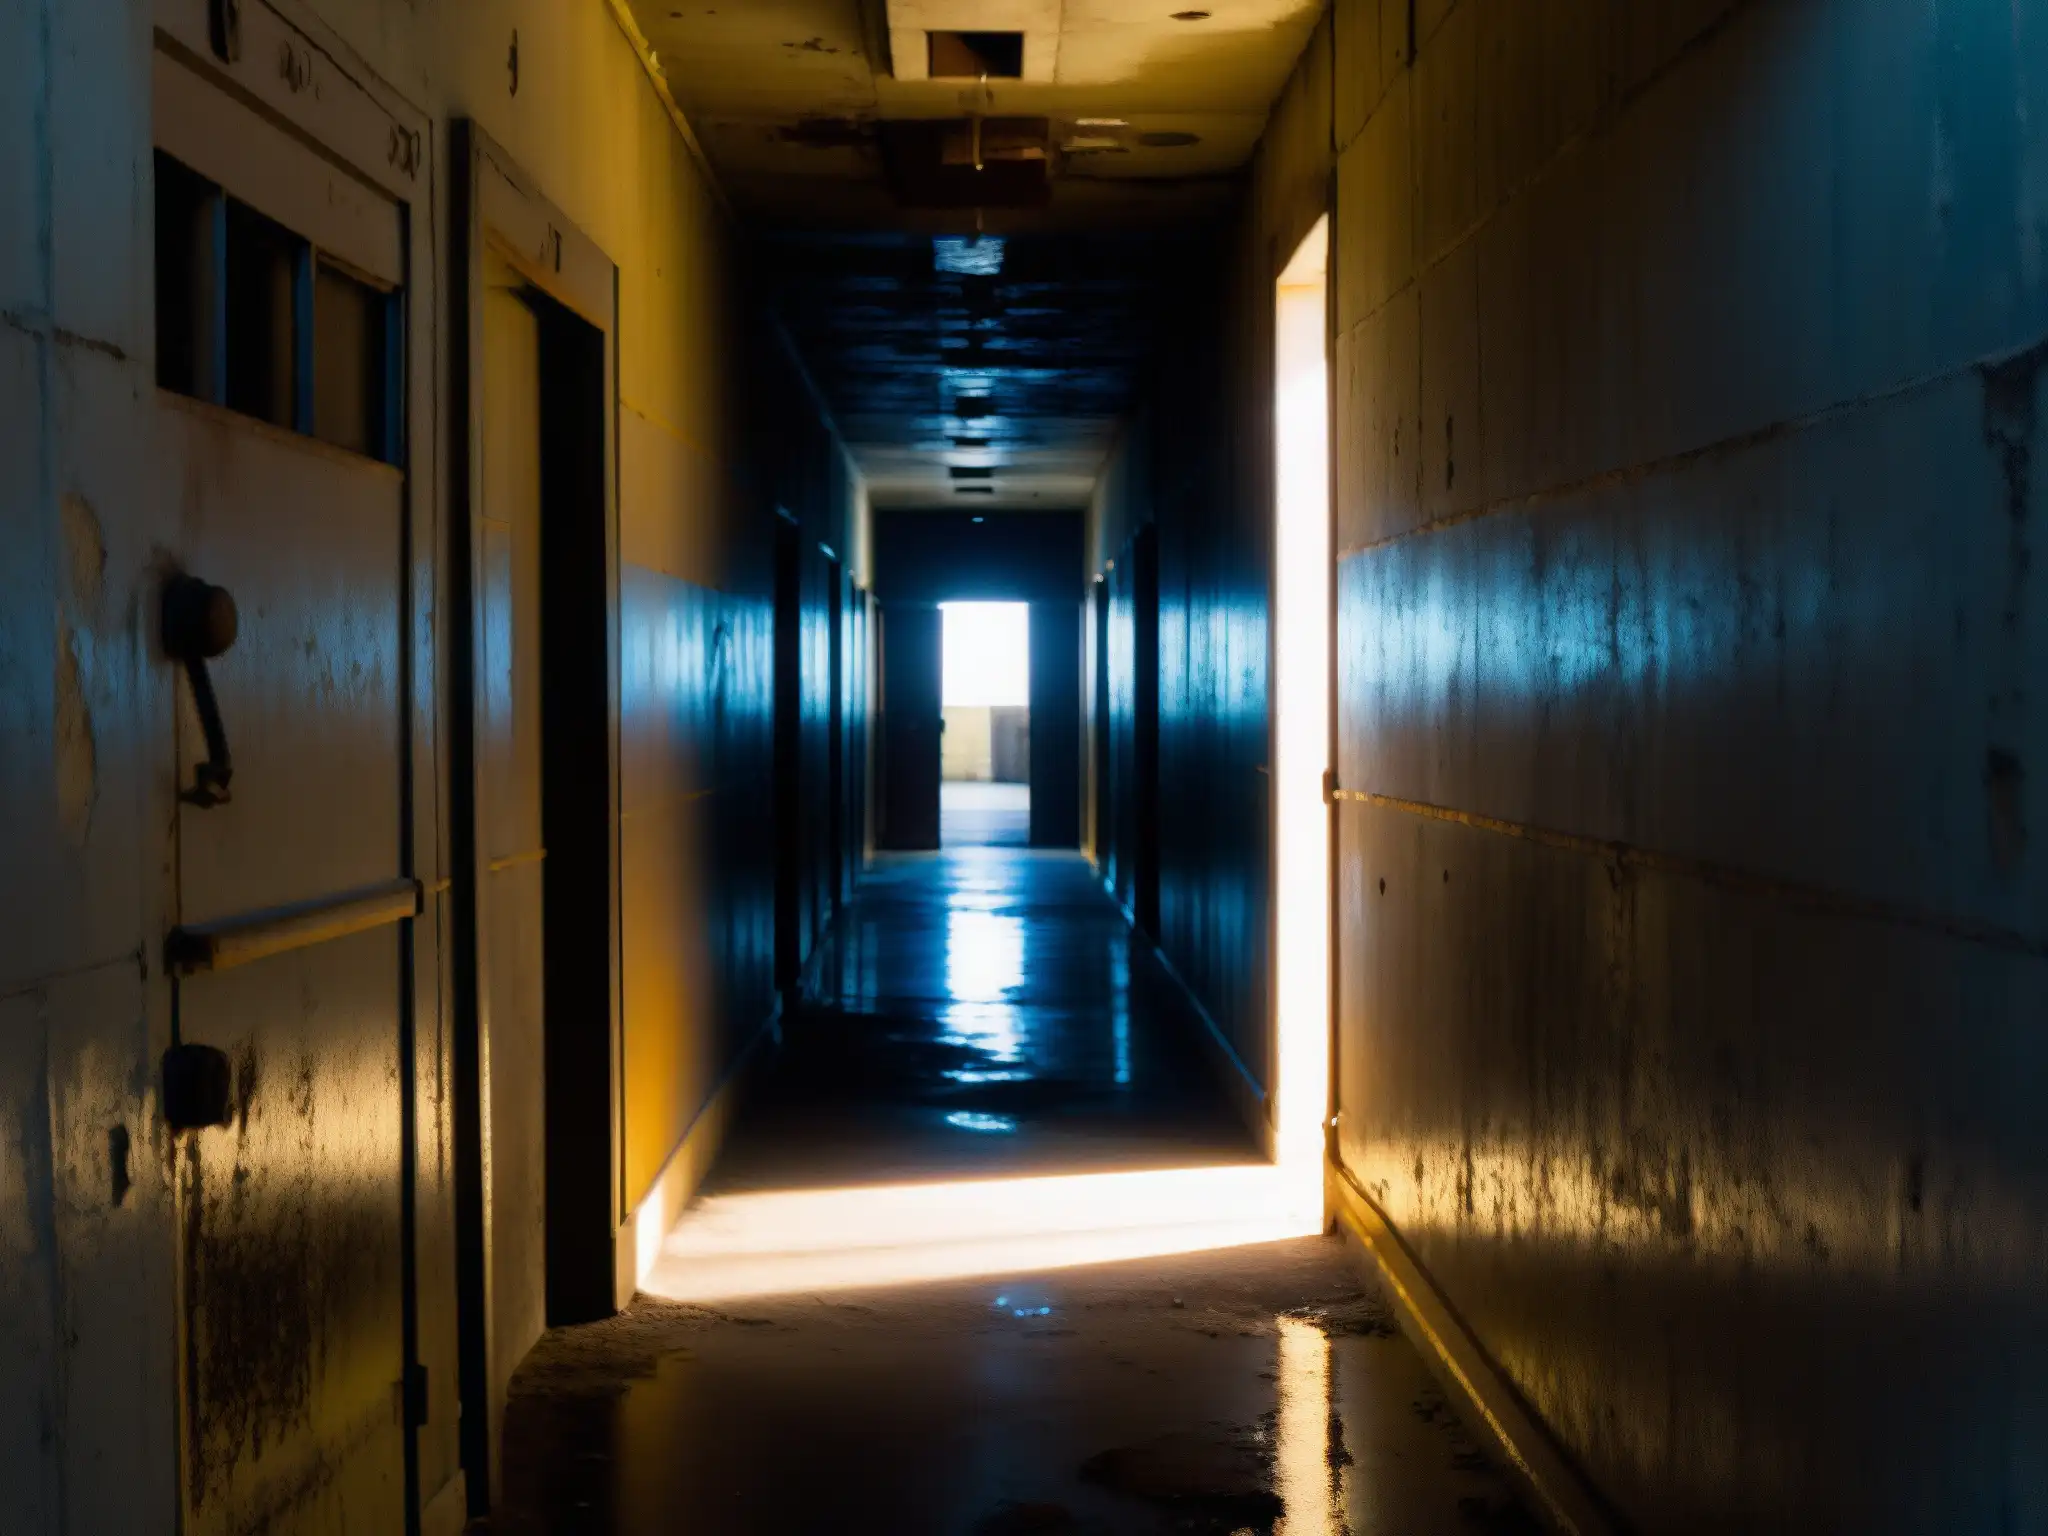 Un pasillo lúgubre y estrecho en la sección abandonada de la prisión de San Quentin